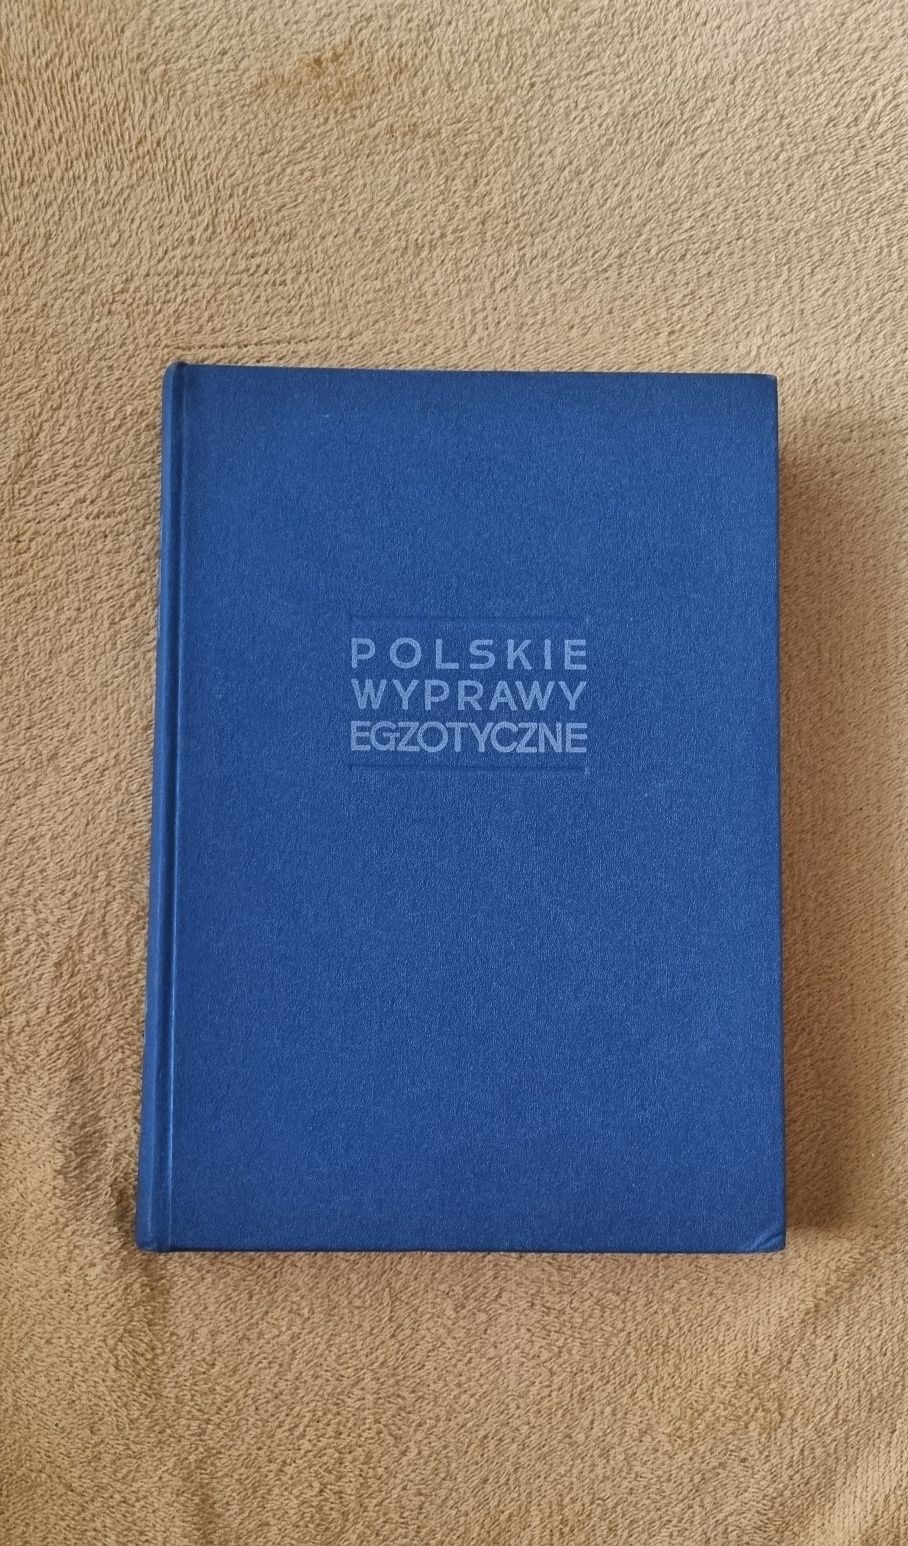 "Polskie wyprawy egzotyczne"